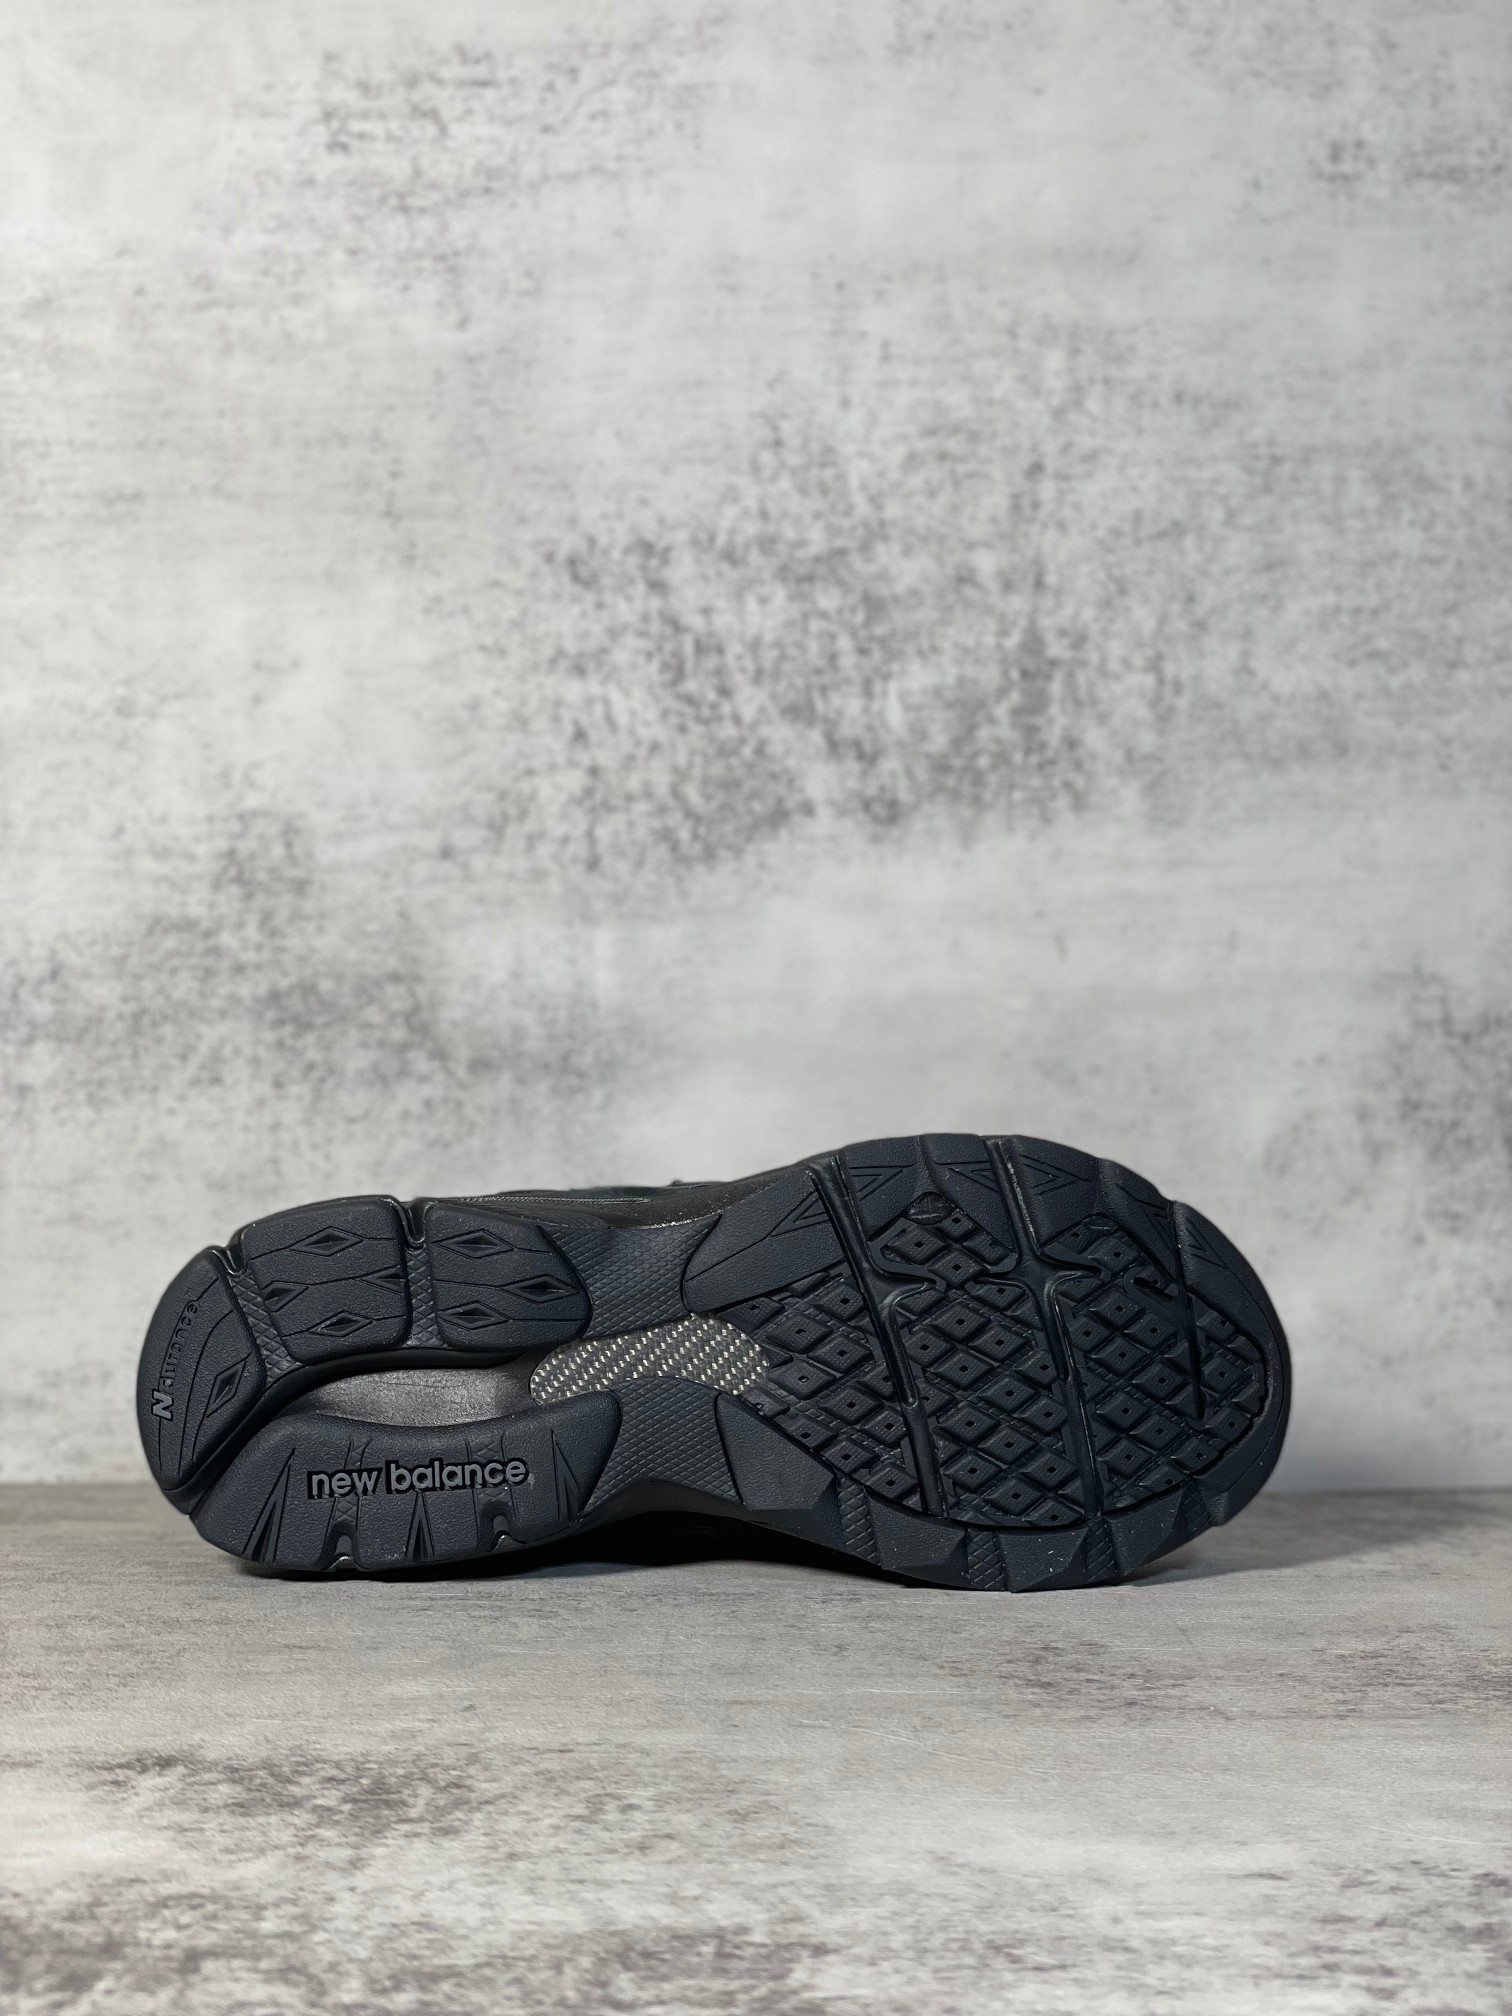 NB990联名款M990TB3外贸纯原版全码出货黑武士全市场唯一原鞋开发全鞋使用原材料打造大底单独开模打